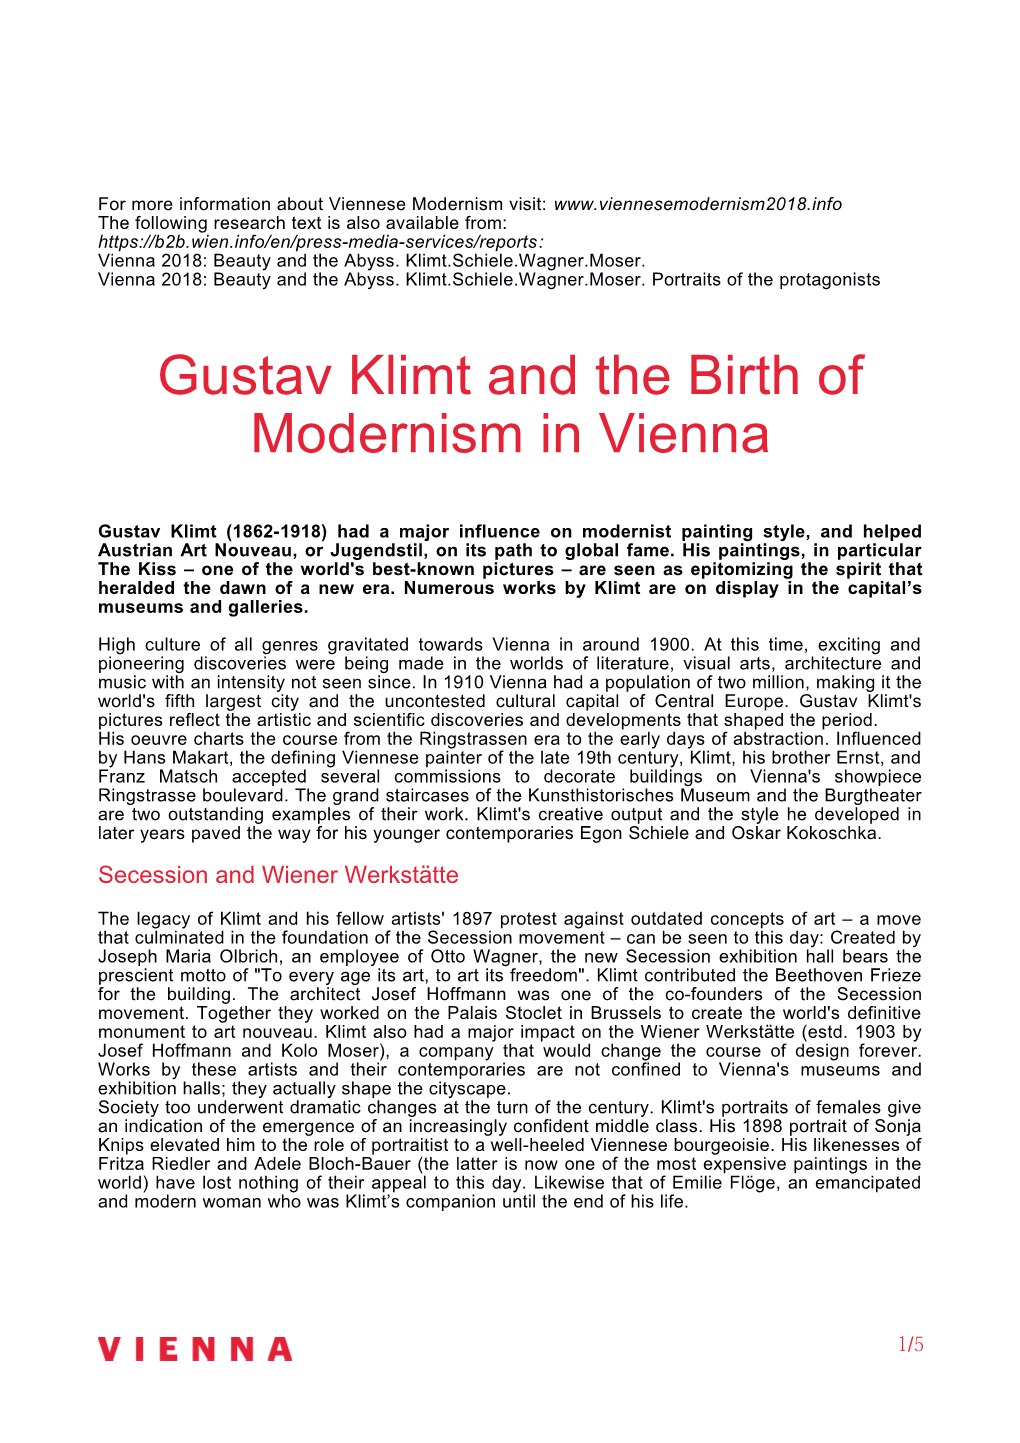 Gustav Klimt and the Birth of Modernism in Vienna